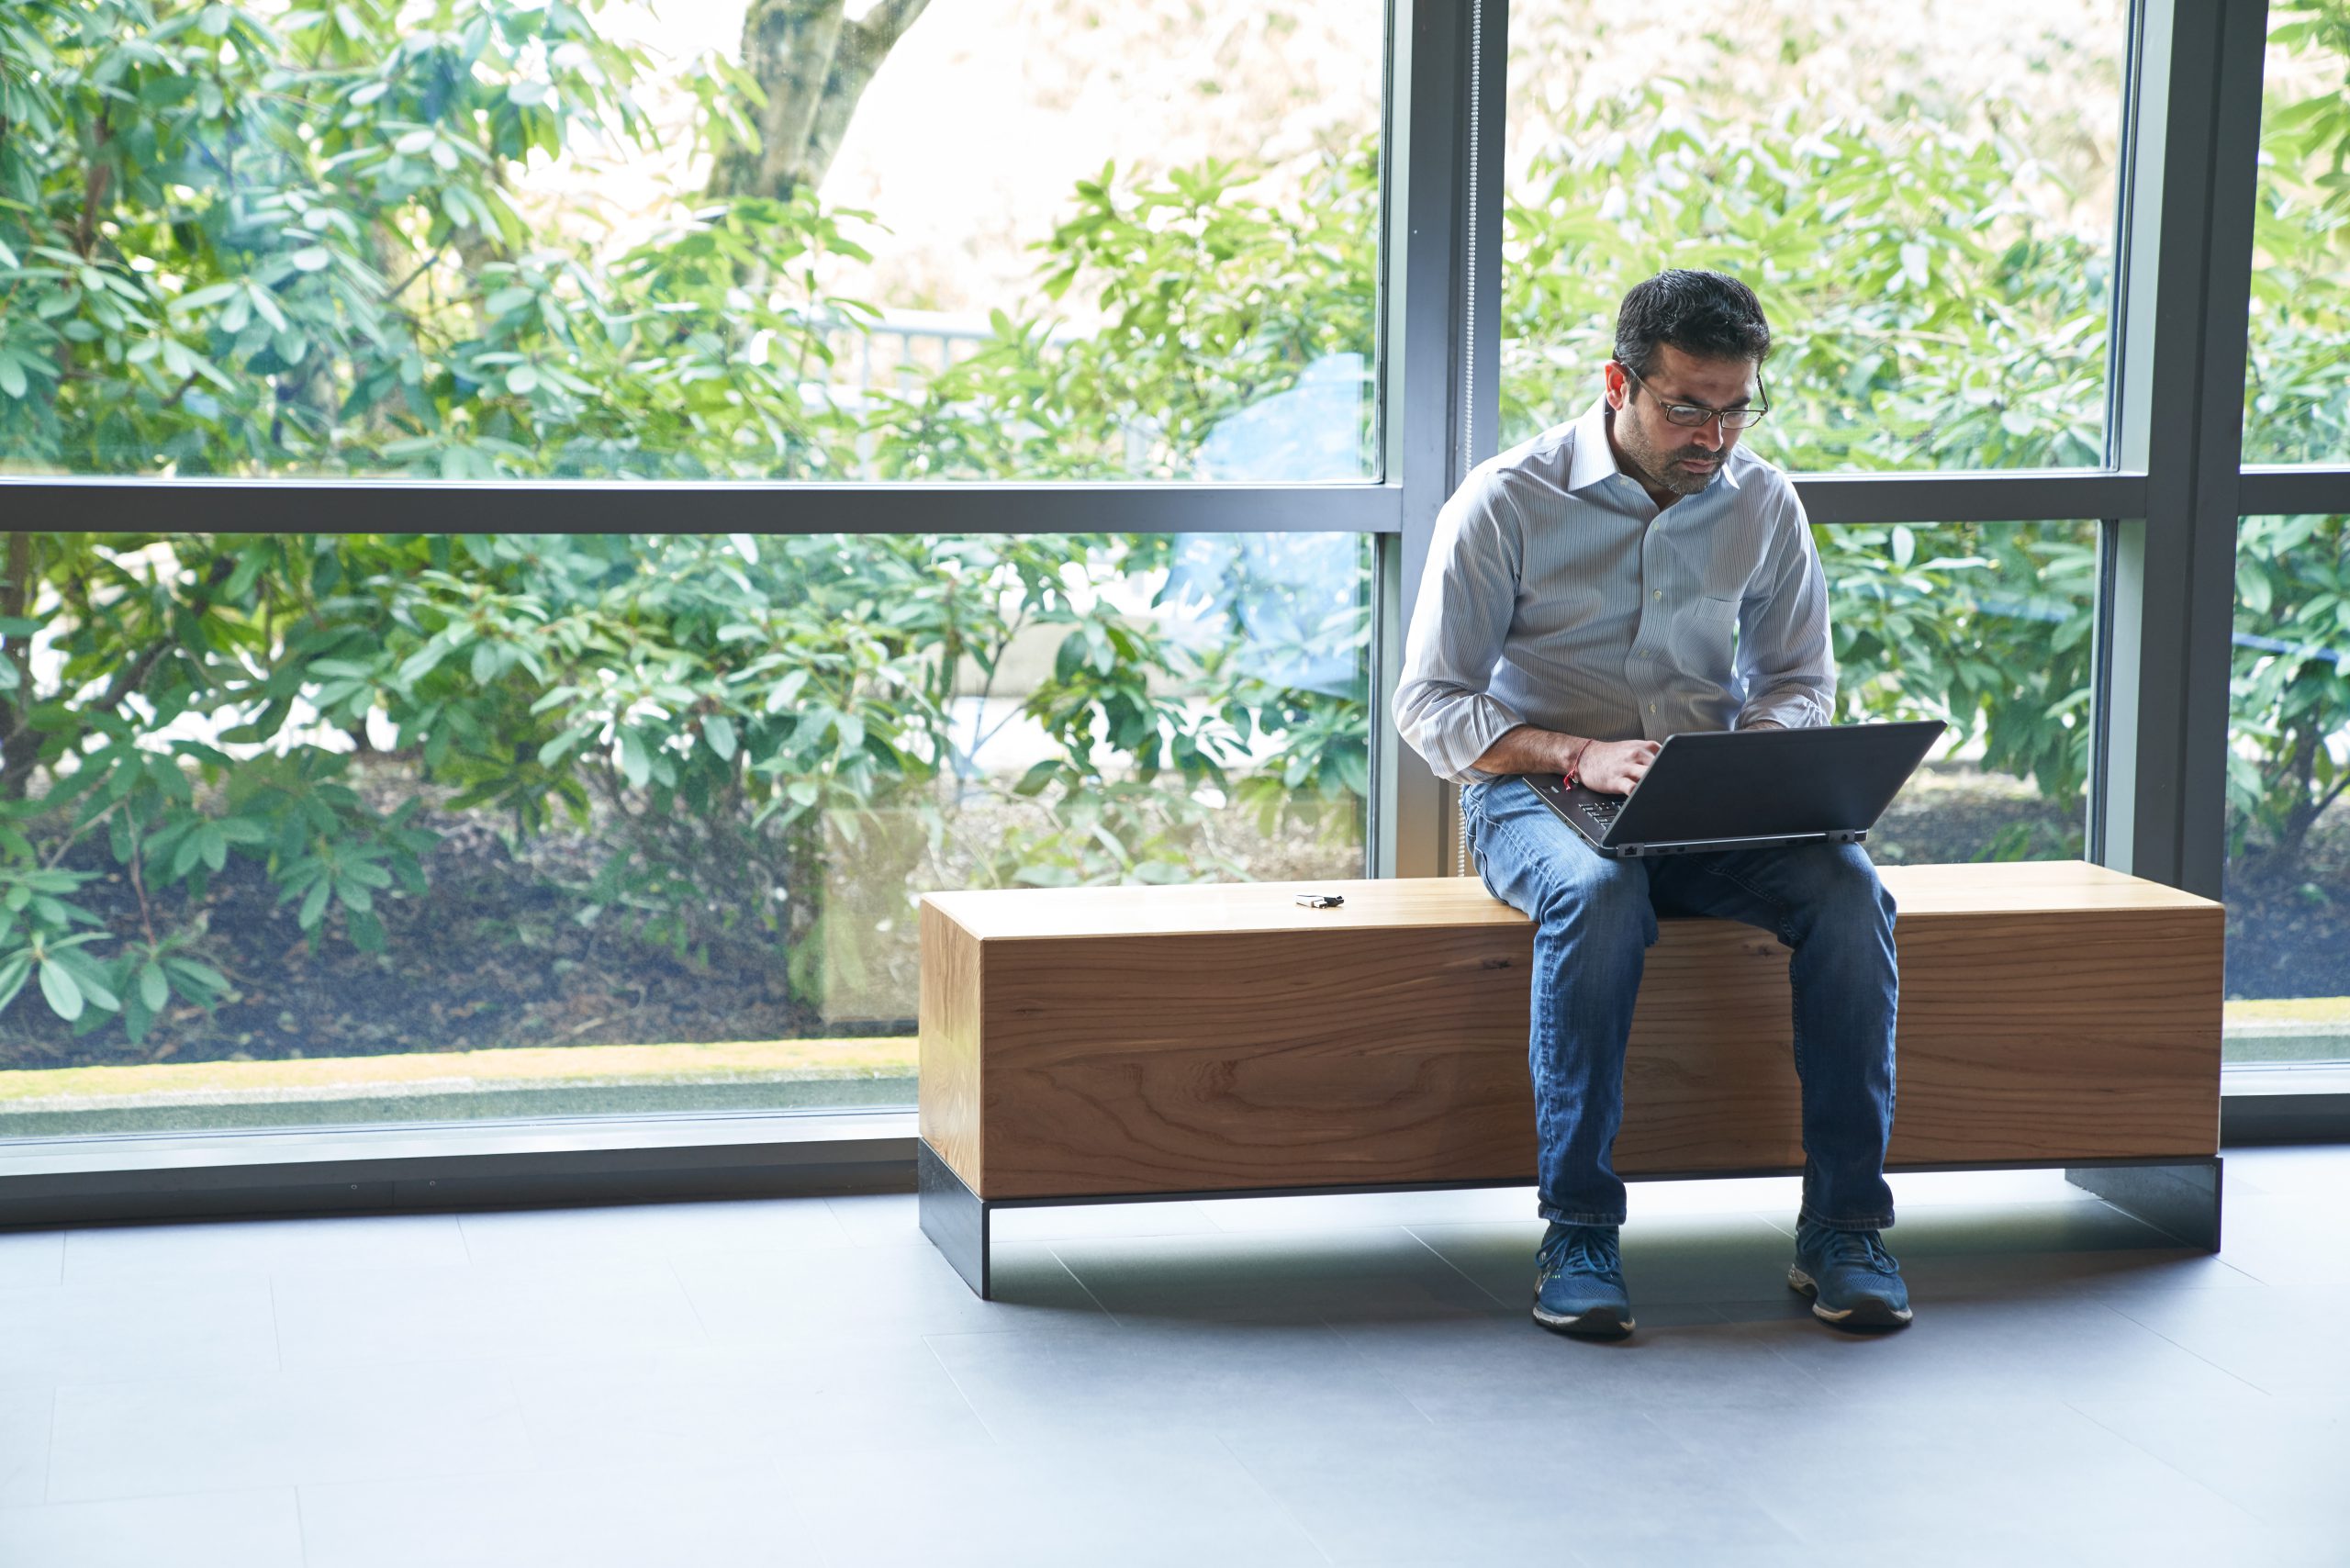 Hombre sentado sobre un banco, trabajando en su computadora portátil.